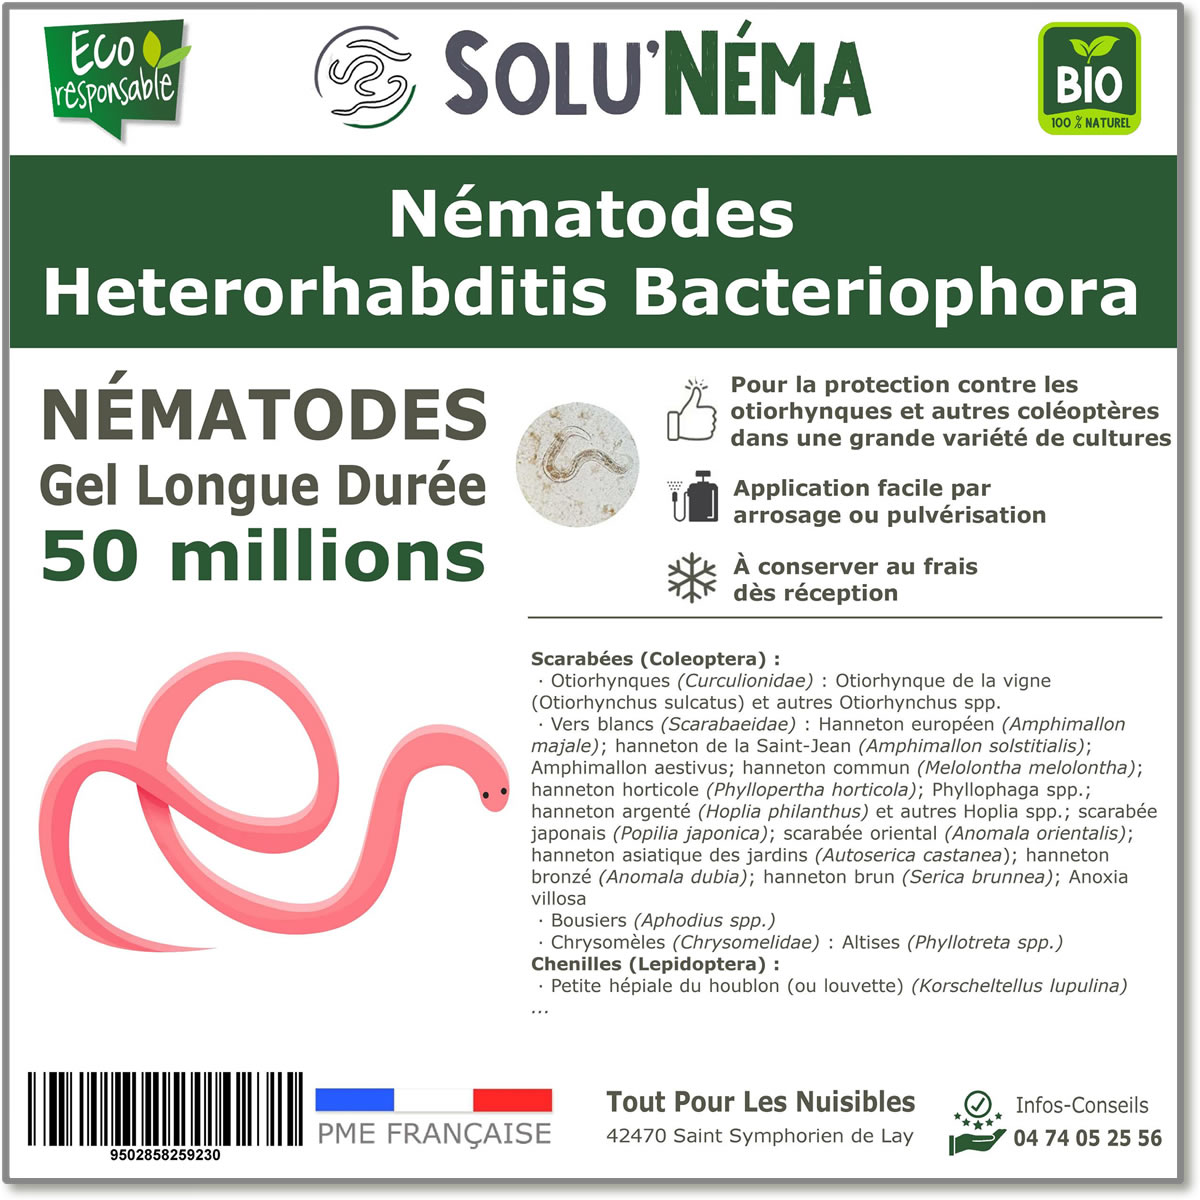 50 Εκατομμύρια νηματώδη βακτηριοφόρα (HB) Heterorhabditis